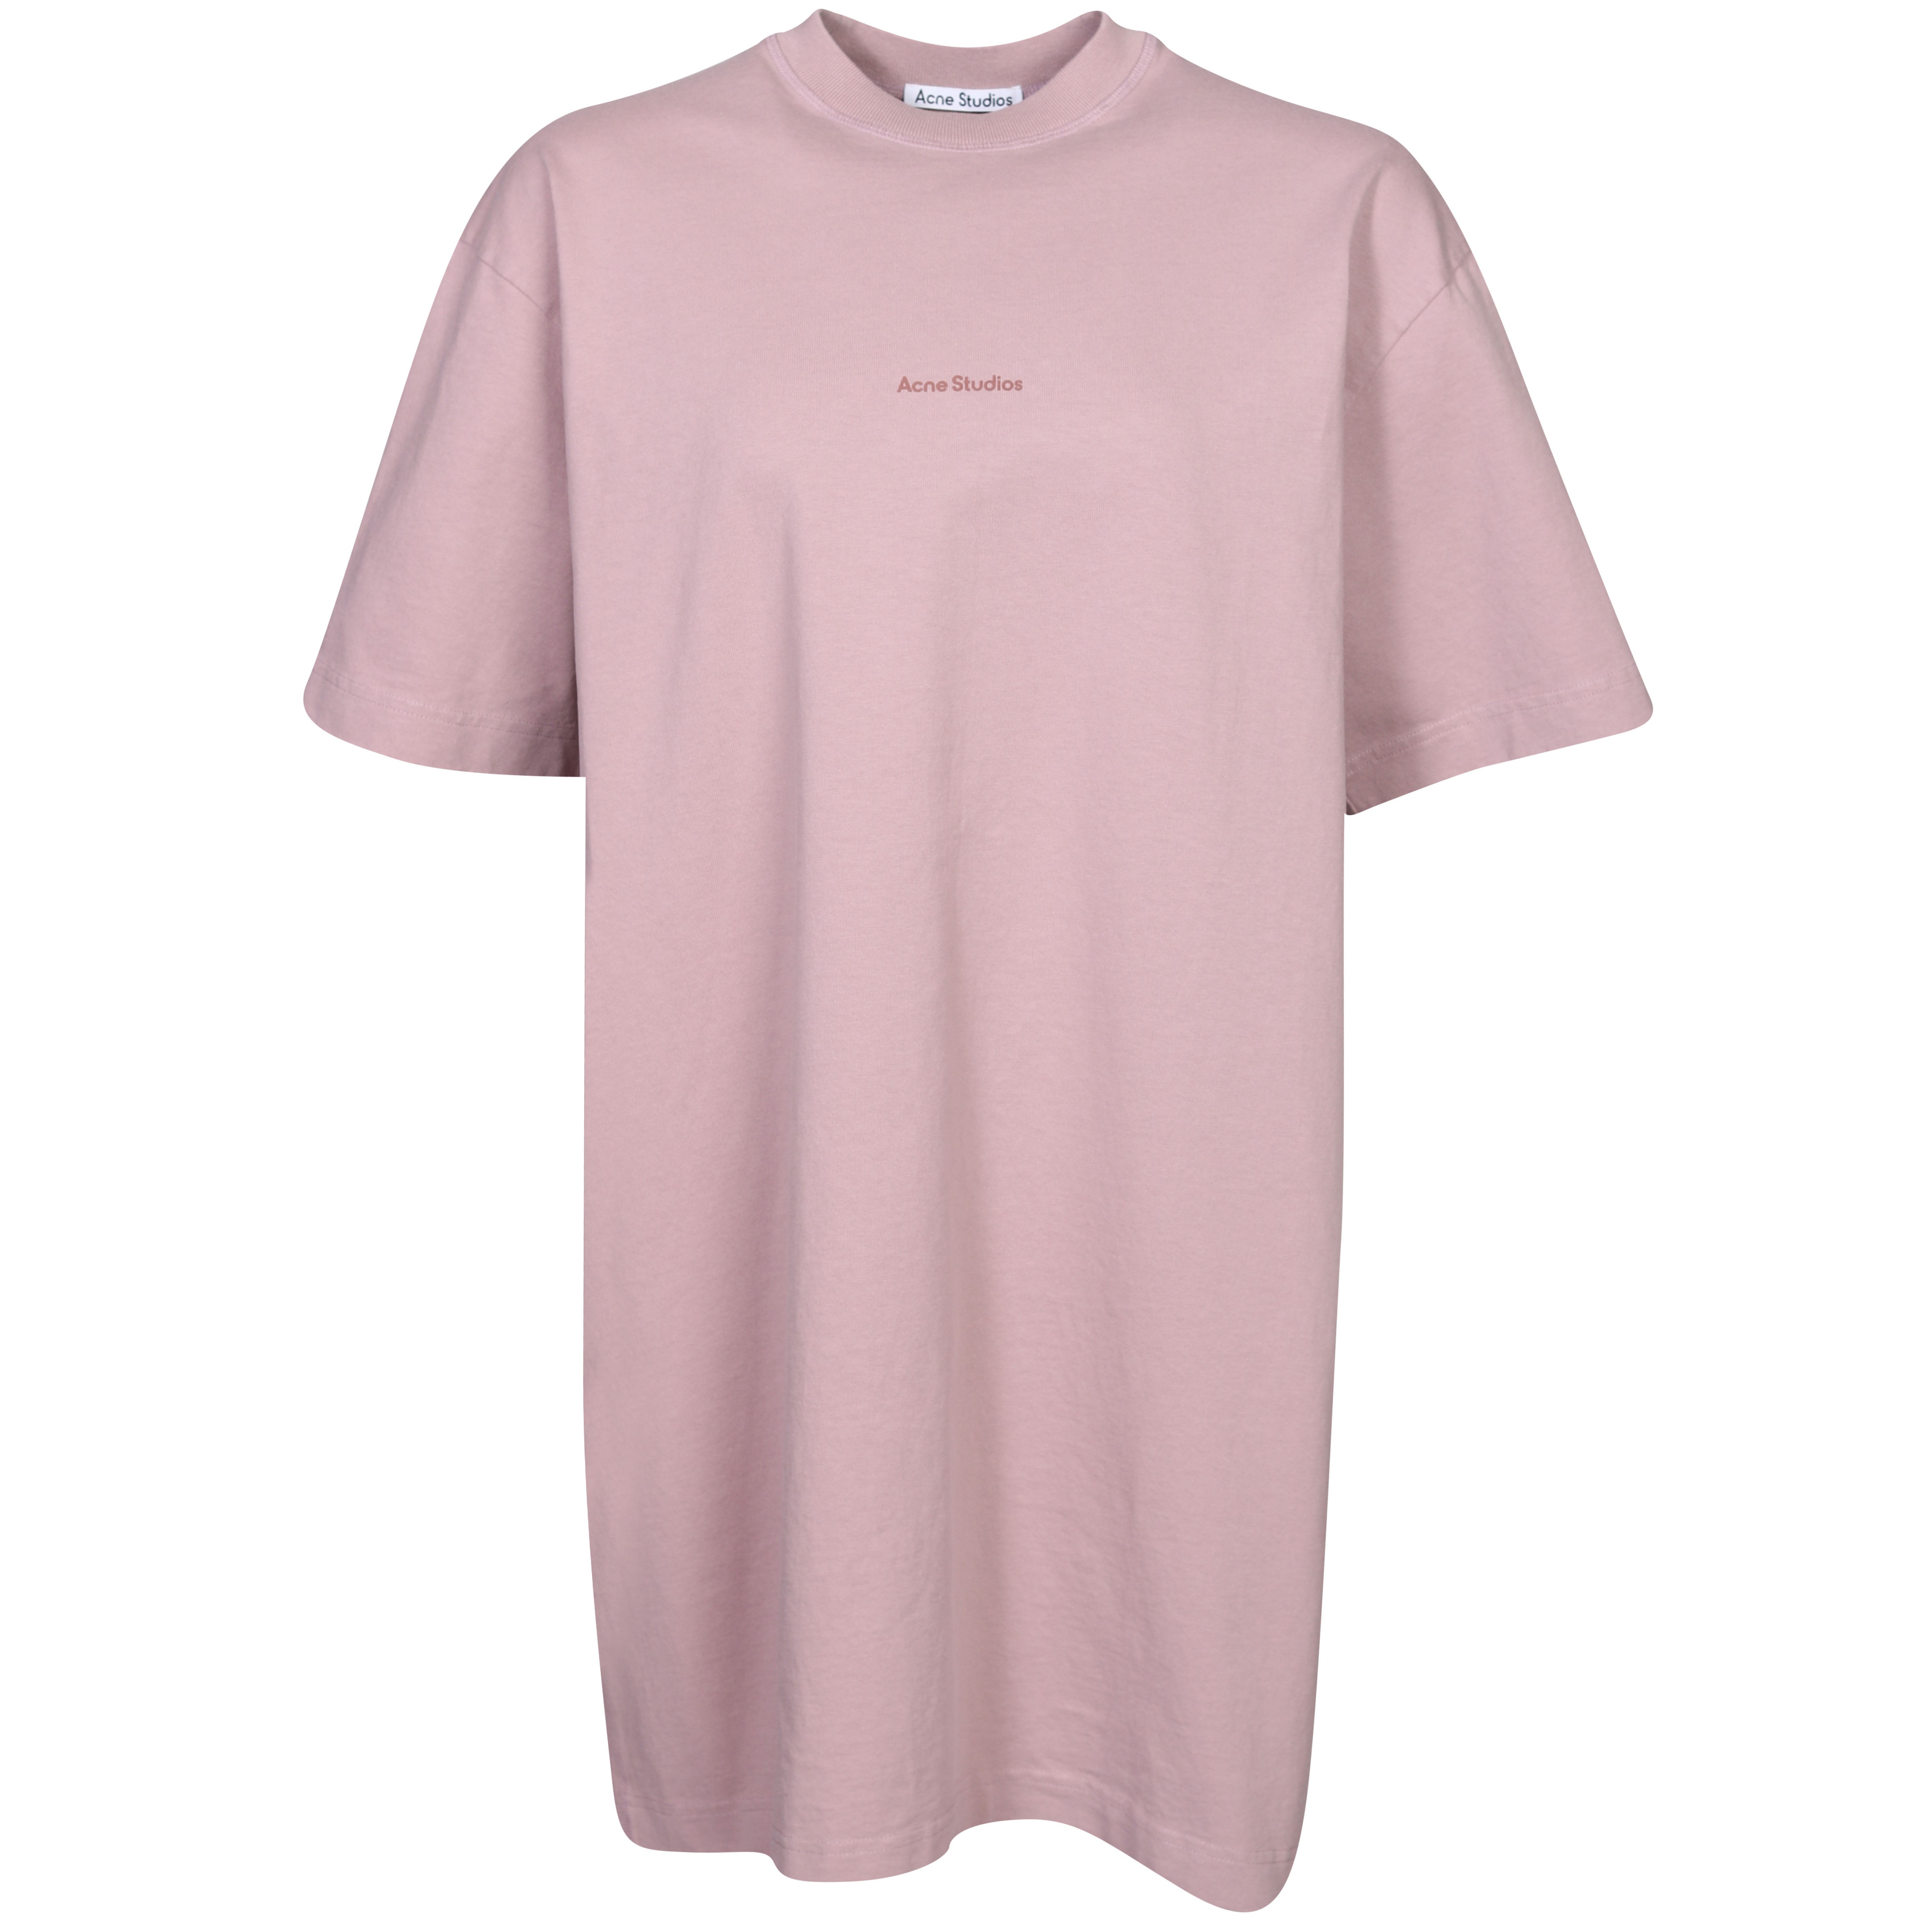 Acne Studios Cotton T-Shirt Dress in Mauve Pink S